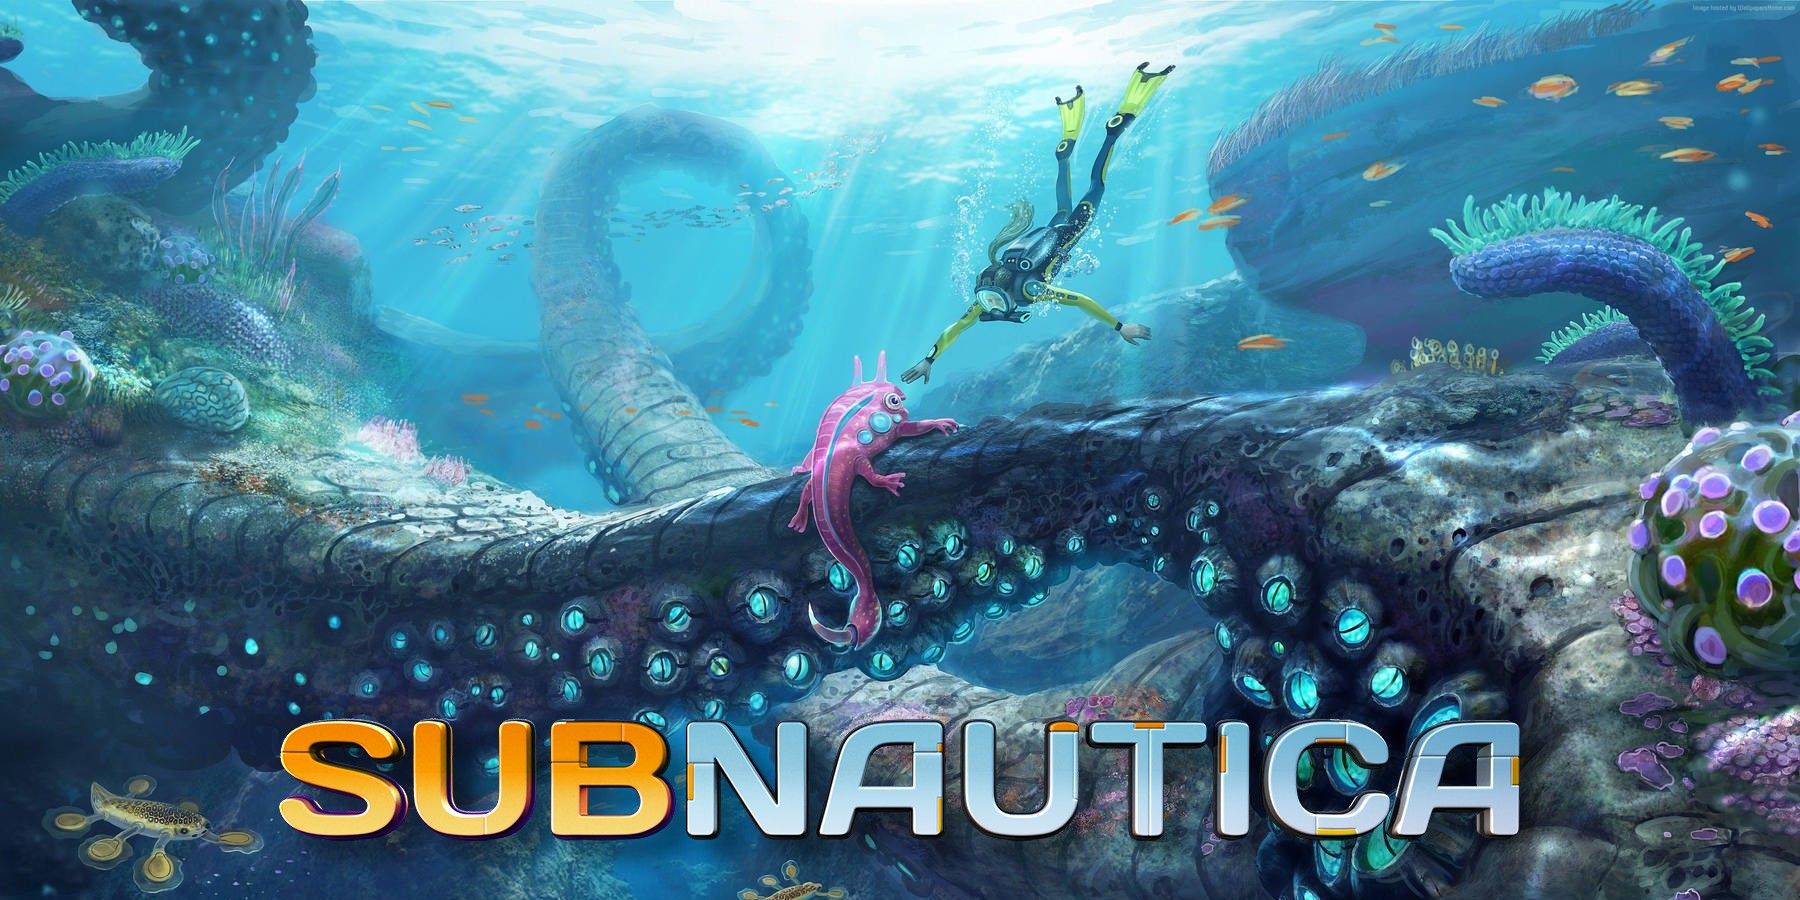 subnautica-logo-underwater-diving-with-sea-creatures